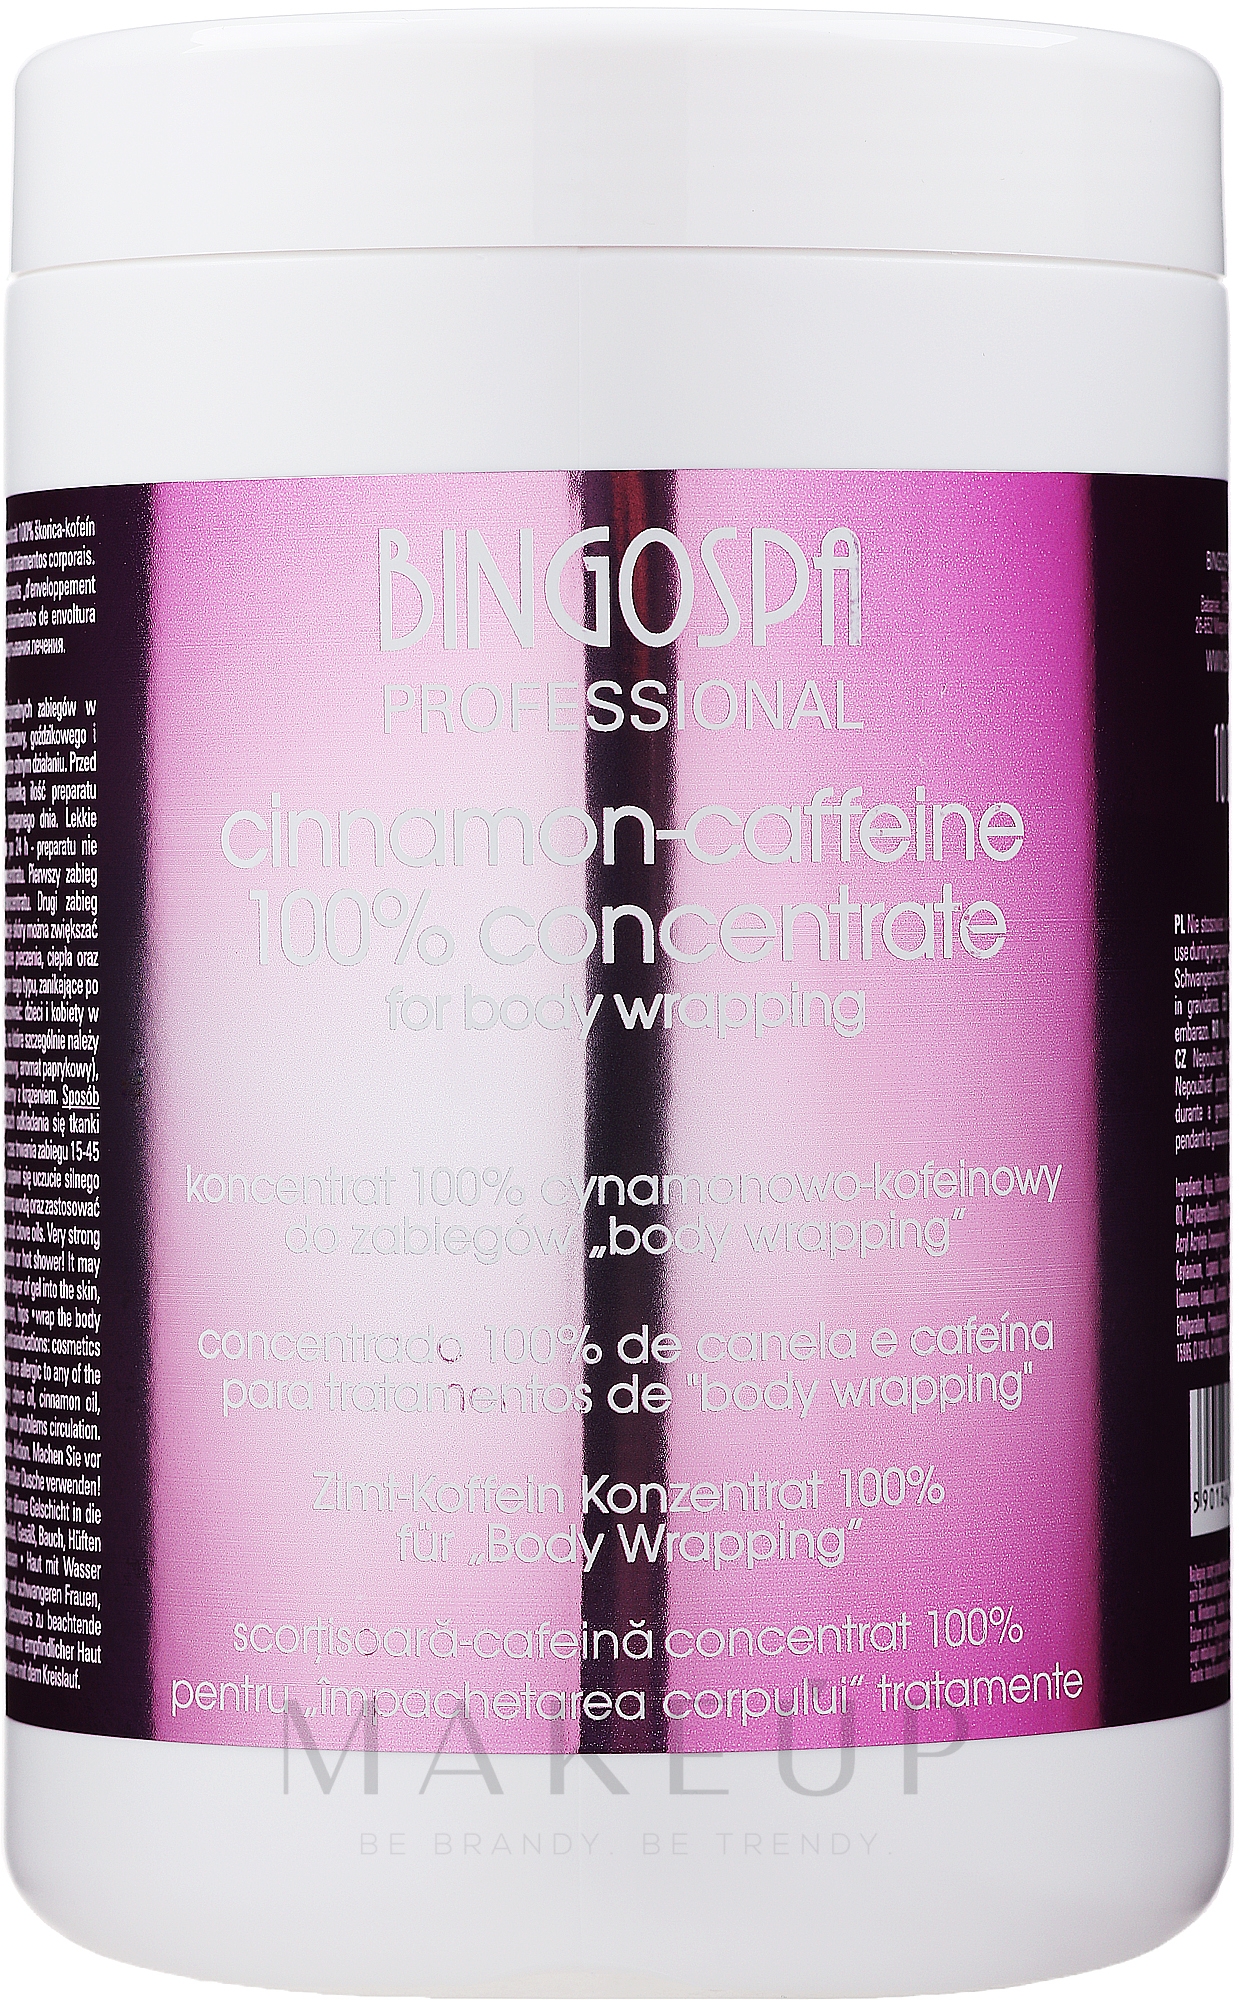 Anti-Cellulite Konzentrat mit Zimt und Koffein - BingoSpa Cinnamon- Caffeine 100% Concentrate  — Foto 1000 g